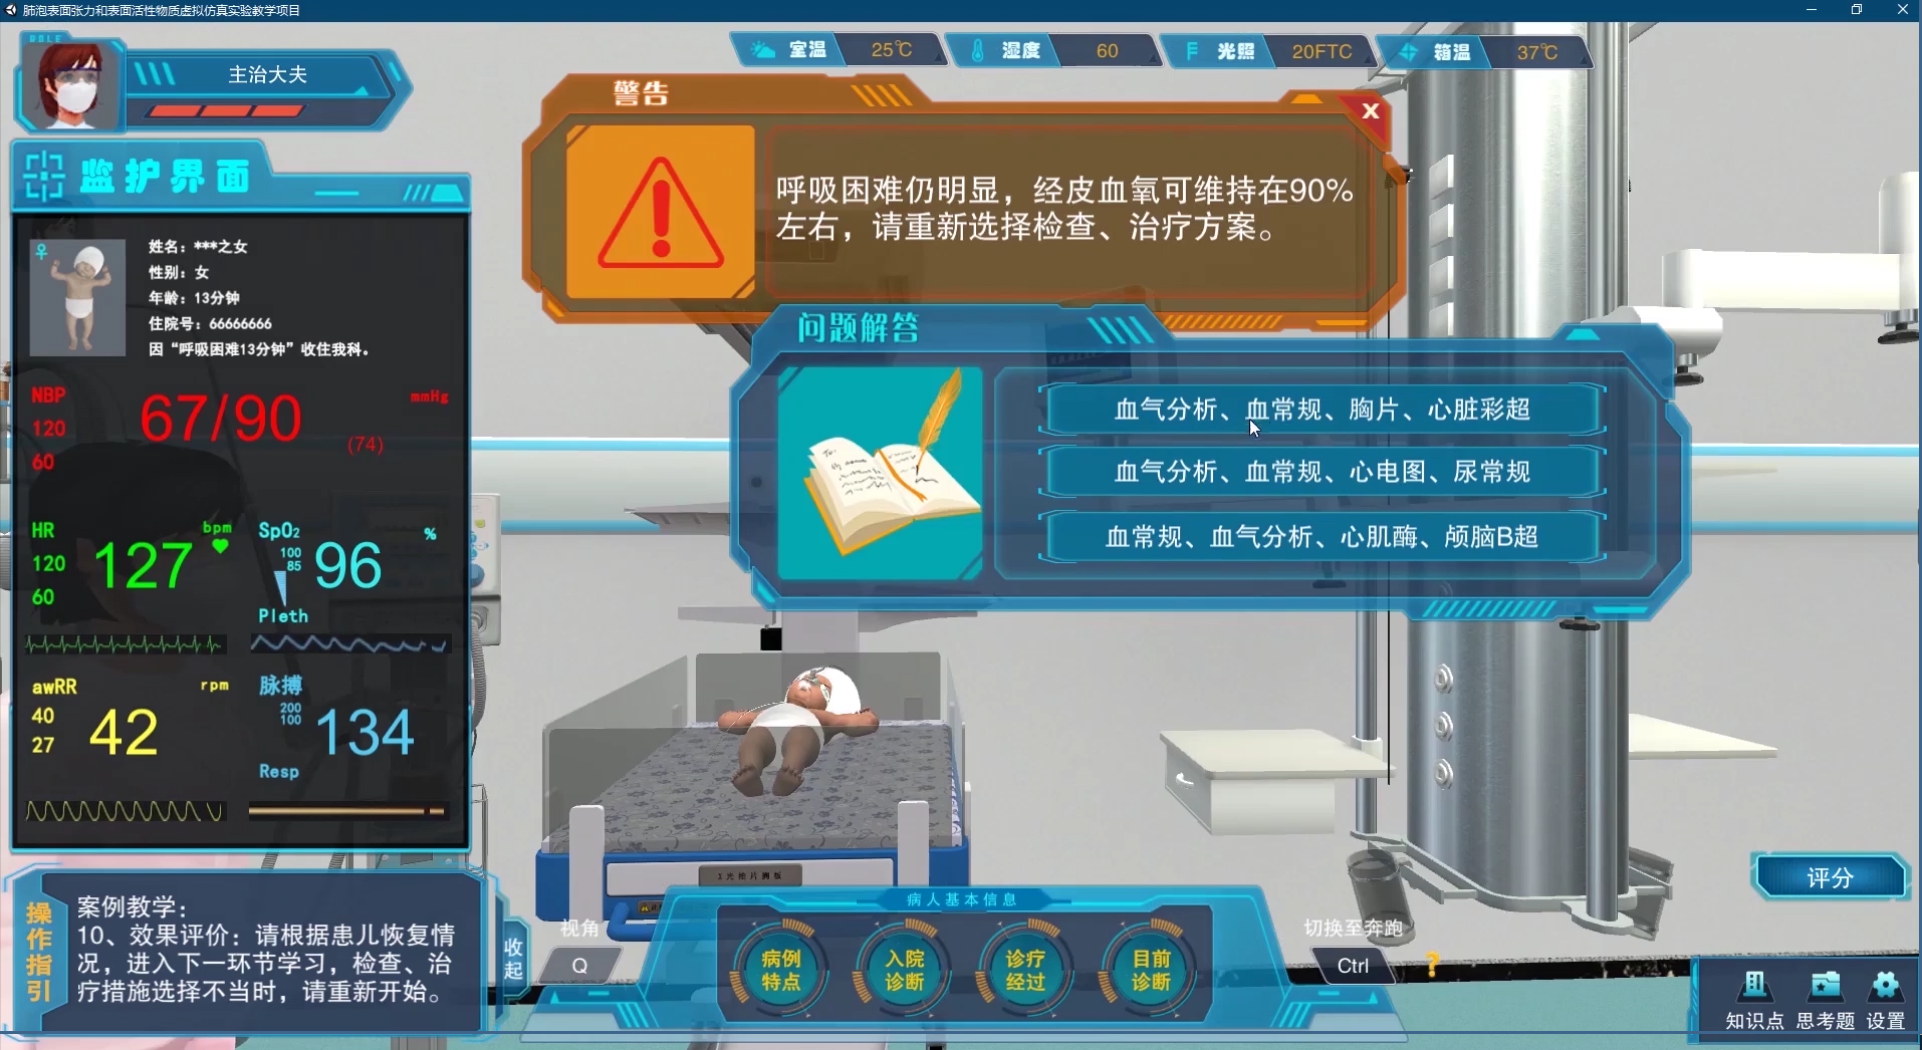 北京欧倍尔肺泡表面张力和表面活性物质虚拟仿真软件